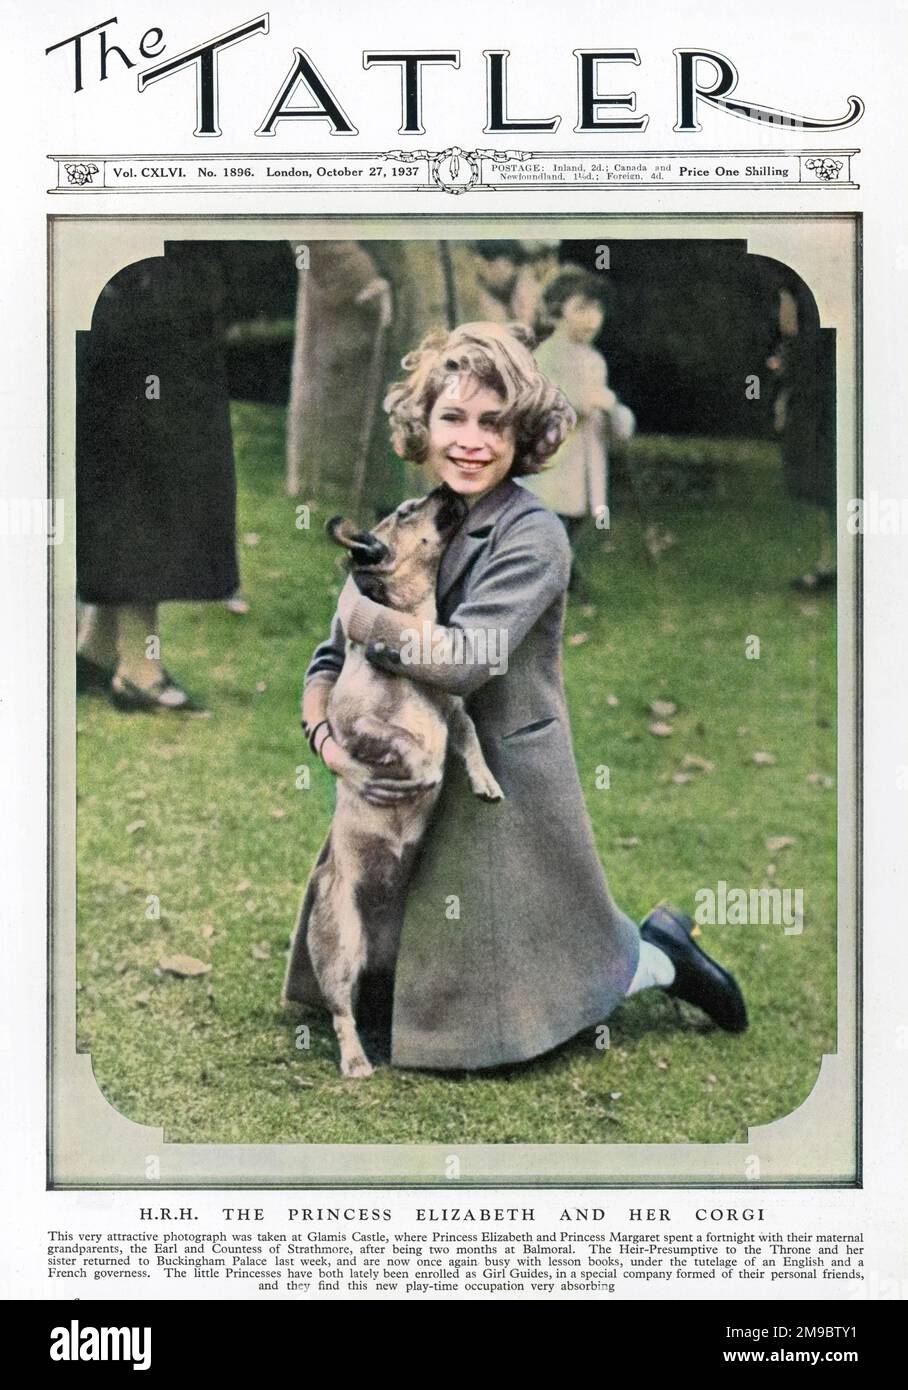 Principessa Elisabetta, in seguito l'attuale Regina Elisabetta II, raffigurata sulla copertina anteriore del Tatler con i suoi corgi al Castello di Glamis, casa dei suoi nonni materni, il Conte e la Contessa di Strathmore. Foto Stock